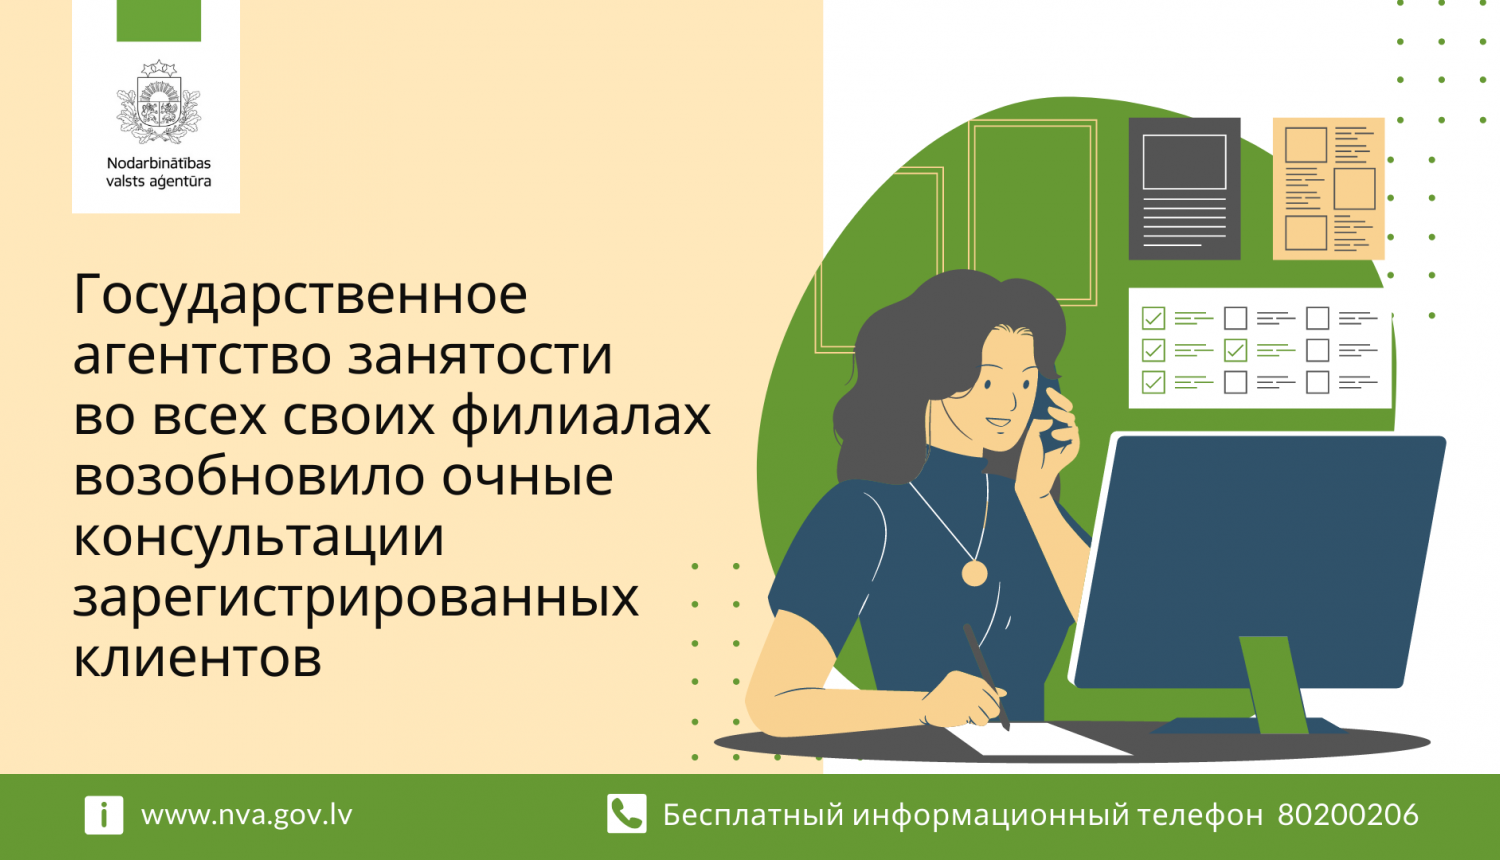 Логотип ГАЗ, текст, иллюстрация: женщина работает у компьютера